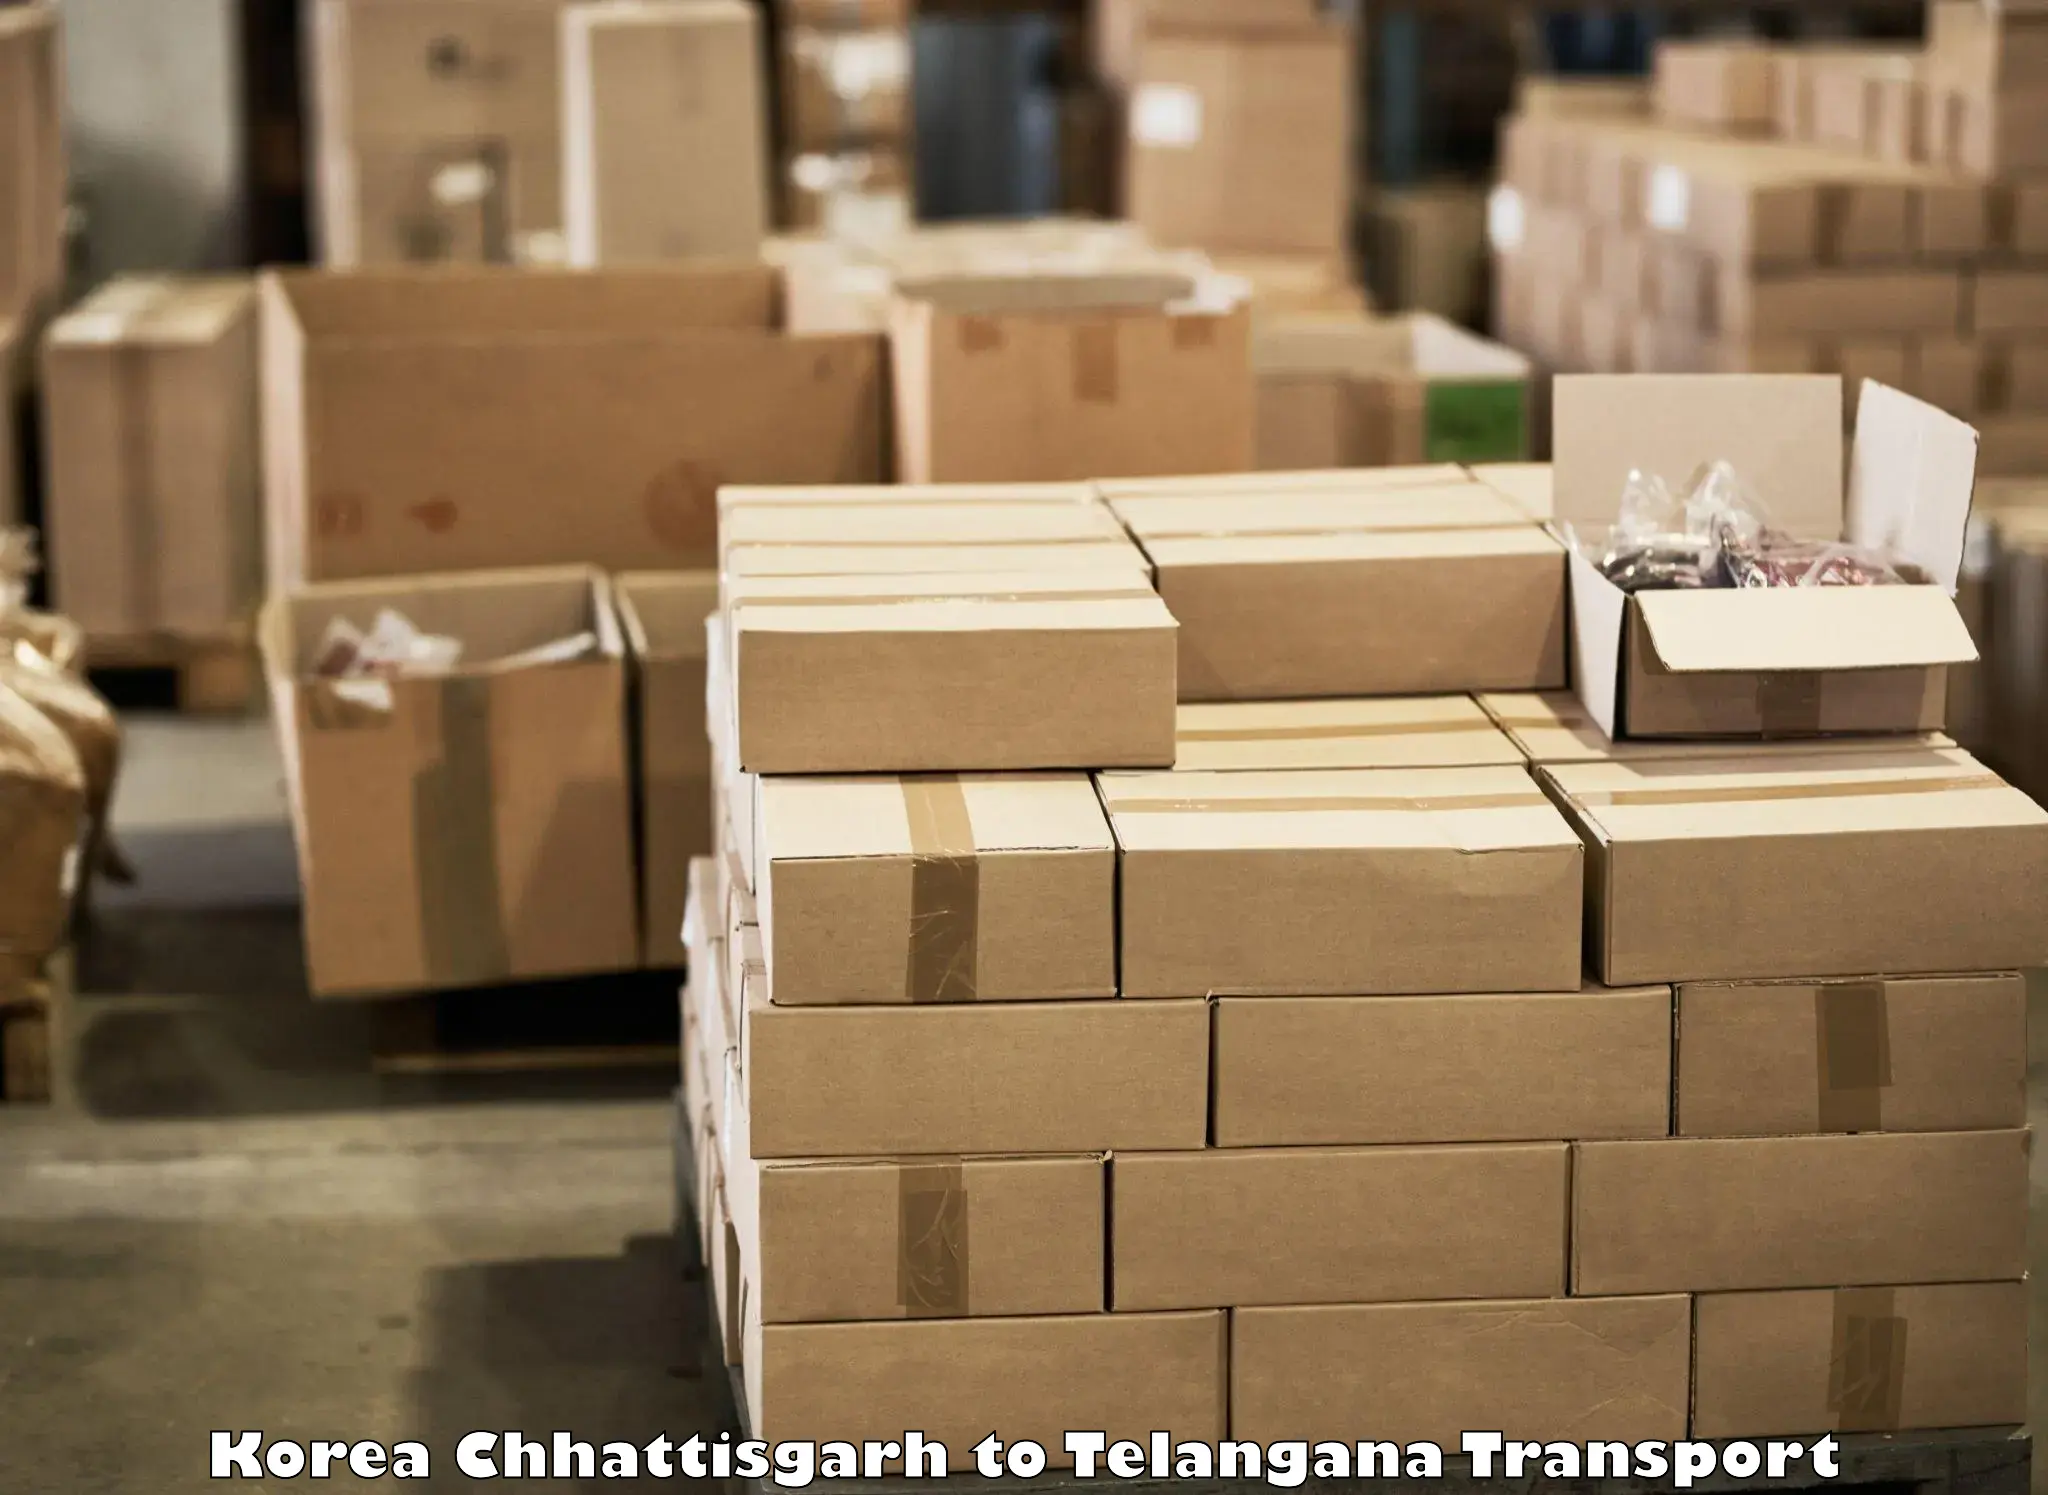 Two wheeler parcel service Korea Chhattisgarh to Bijinapalle